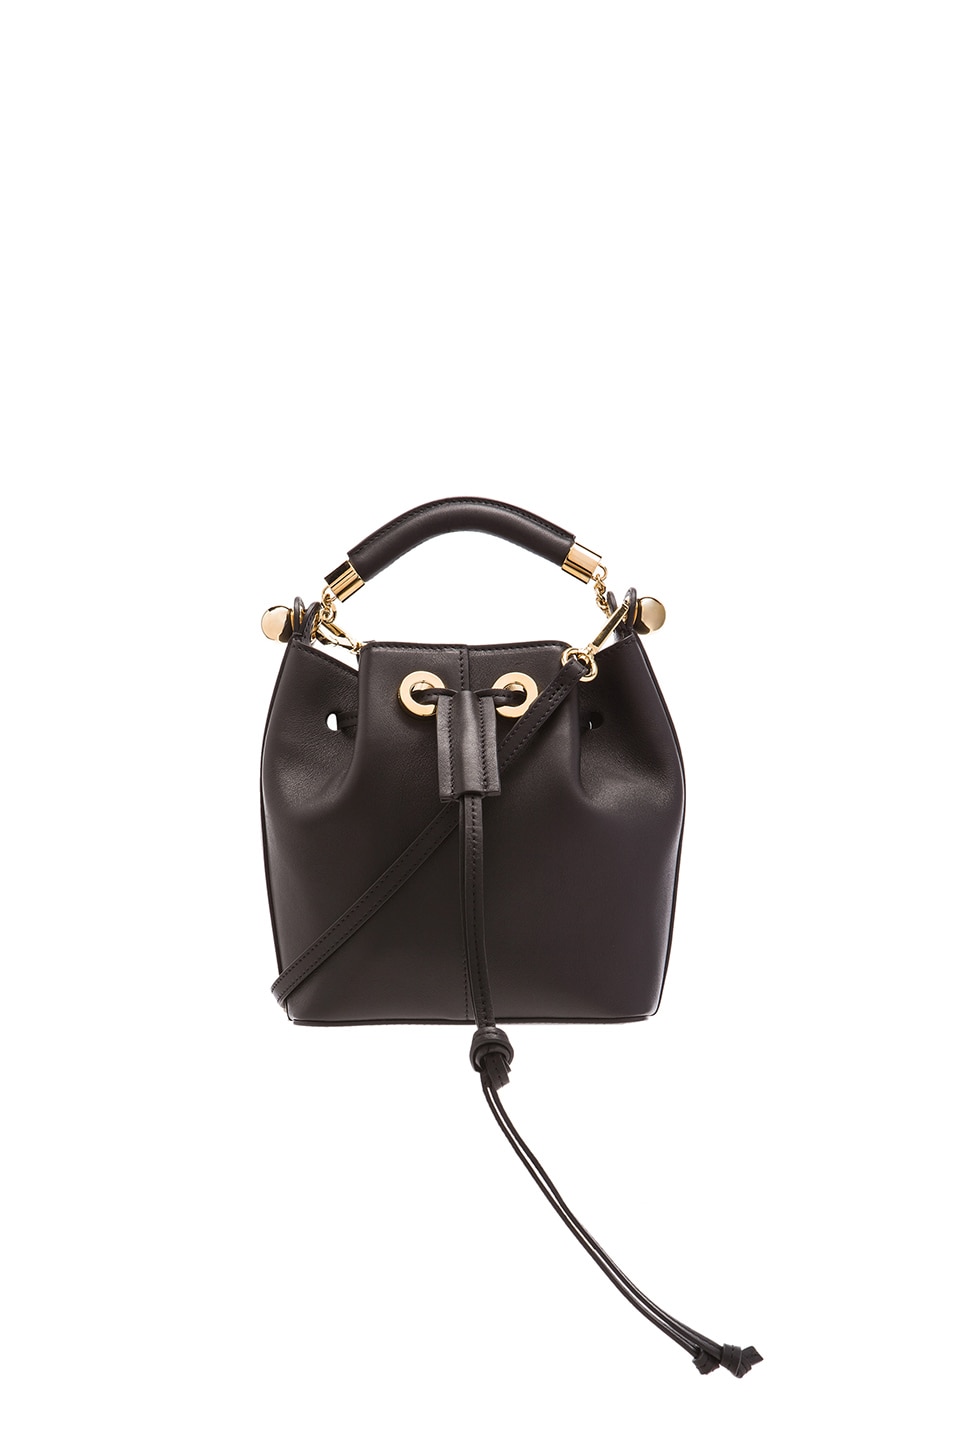 chloe marcie saddle bag - Chloe Small Gala Smooth Calfskin Bag in Black | FWRD